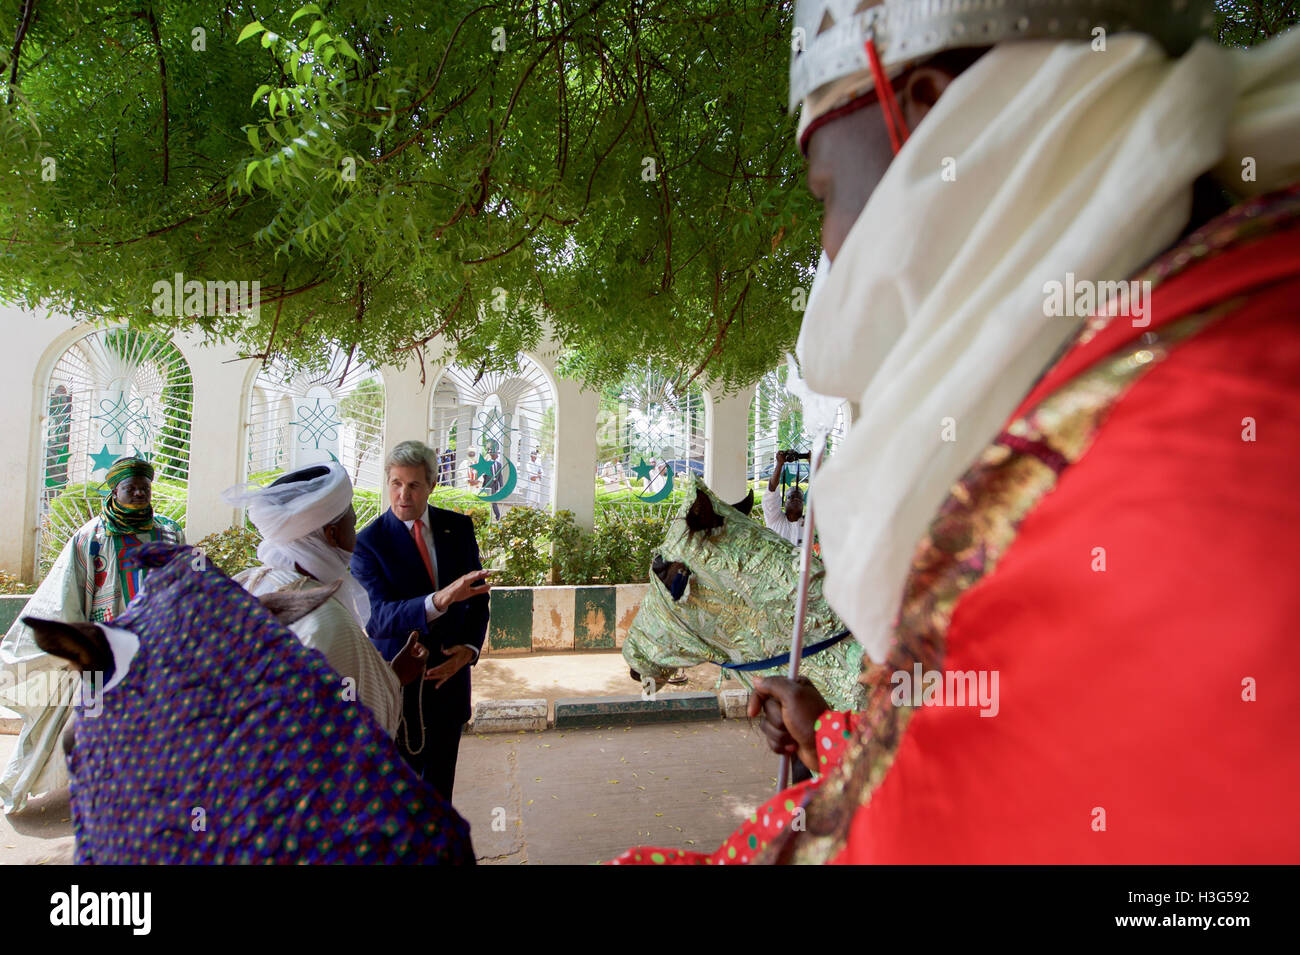 Stati Uniti Il segretario di Stato John Kerry, uniti da Sultan Muhammadu Sa'ad Abubakar, esamina alcune delle Sultan's Parade cavalli dopo l'erogazione di un discorso sulla lotta contro l'estremismo violento e promuovere la buona governance a seguito di una riunione con i funzionari del governo e i leader religiosi presso il Palazzo del Sultano di Sokoto in Nigeria il 23 agosto 2016. Foto Stock